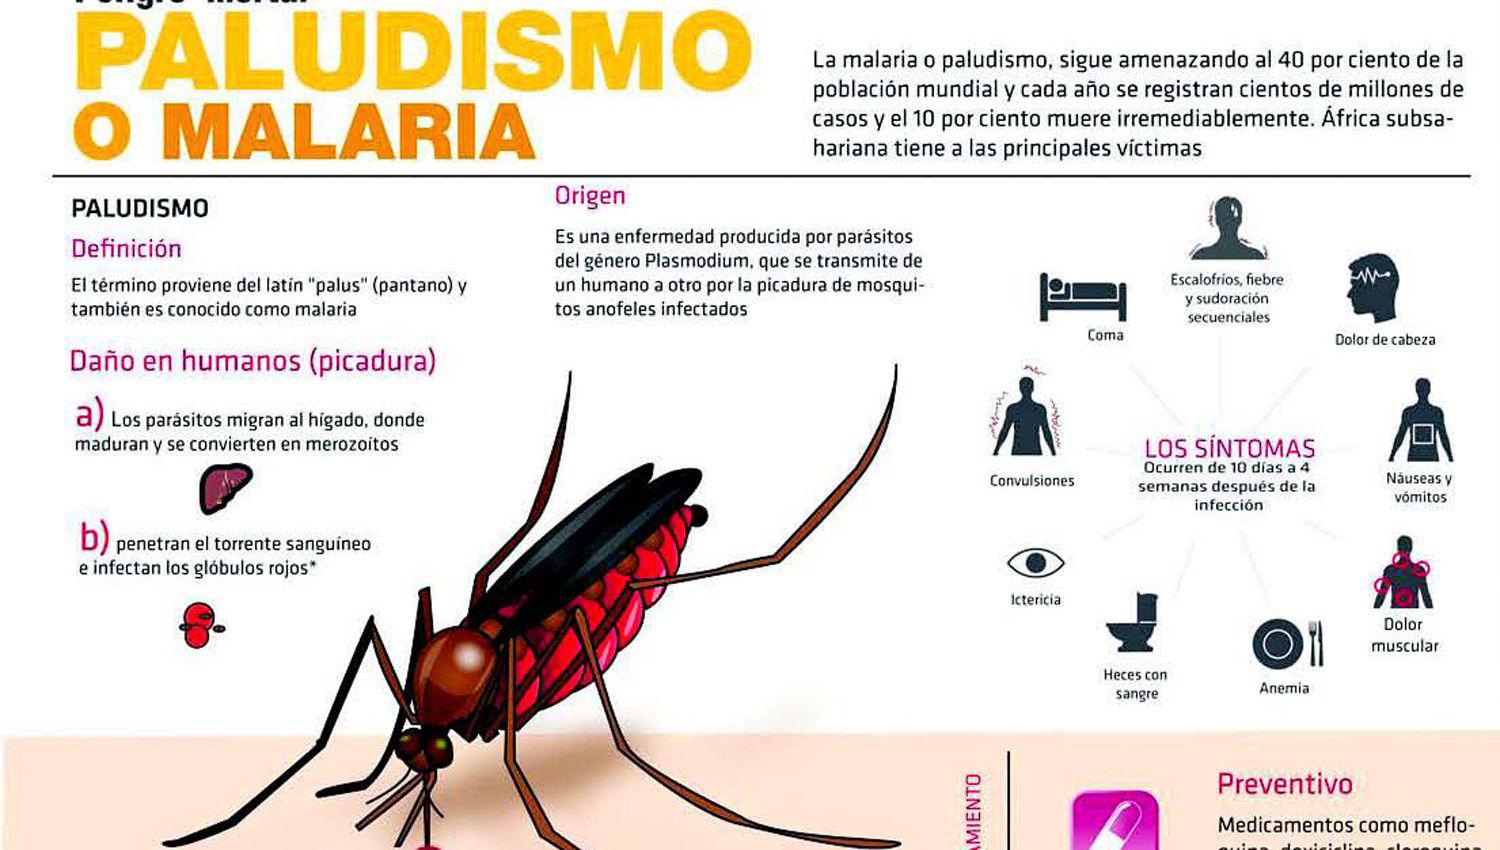 La prevencioacuten y tratamiento son claves para reducir el paludismo